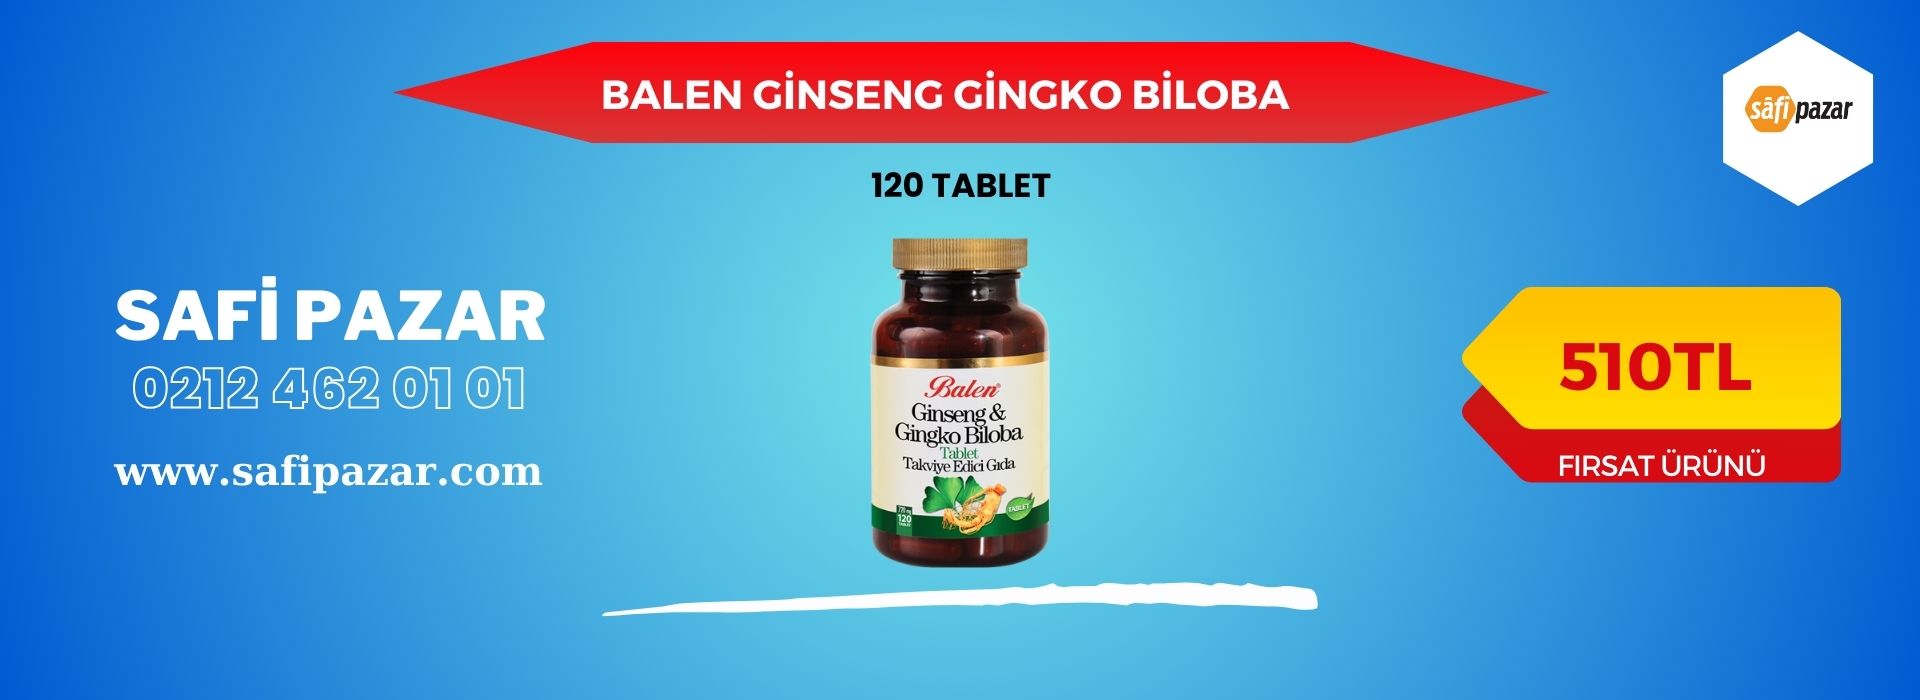 Balen Ginseng & Gingko Biloba Tablet